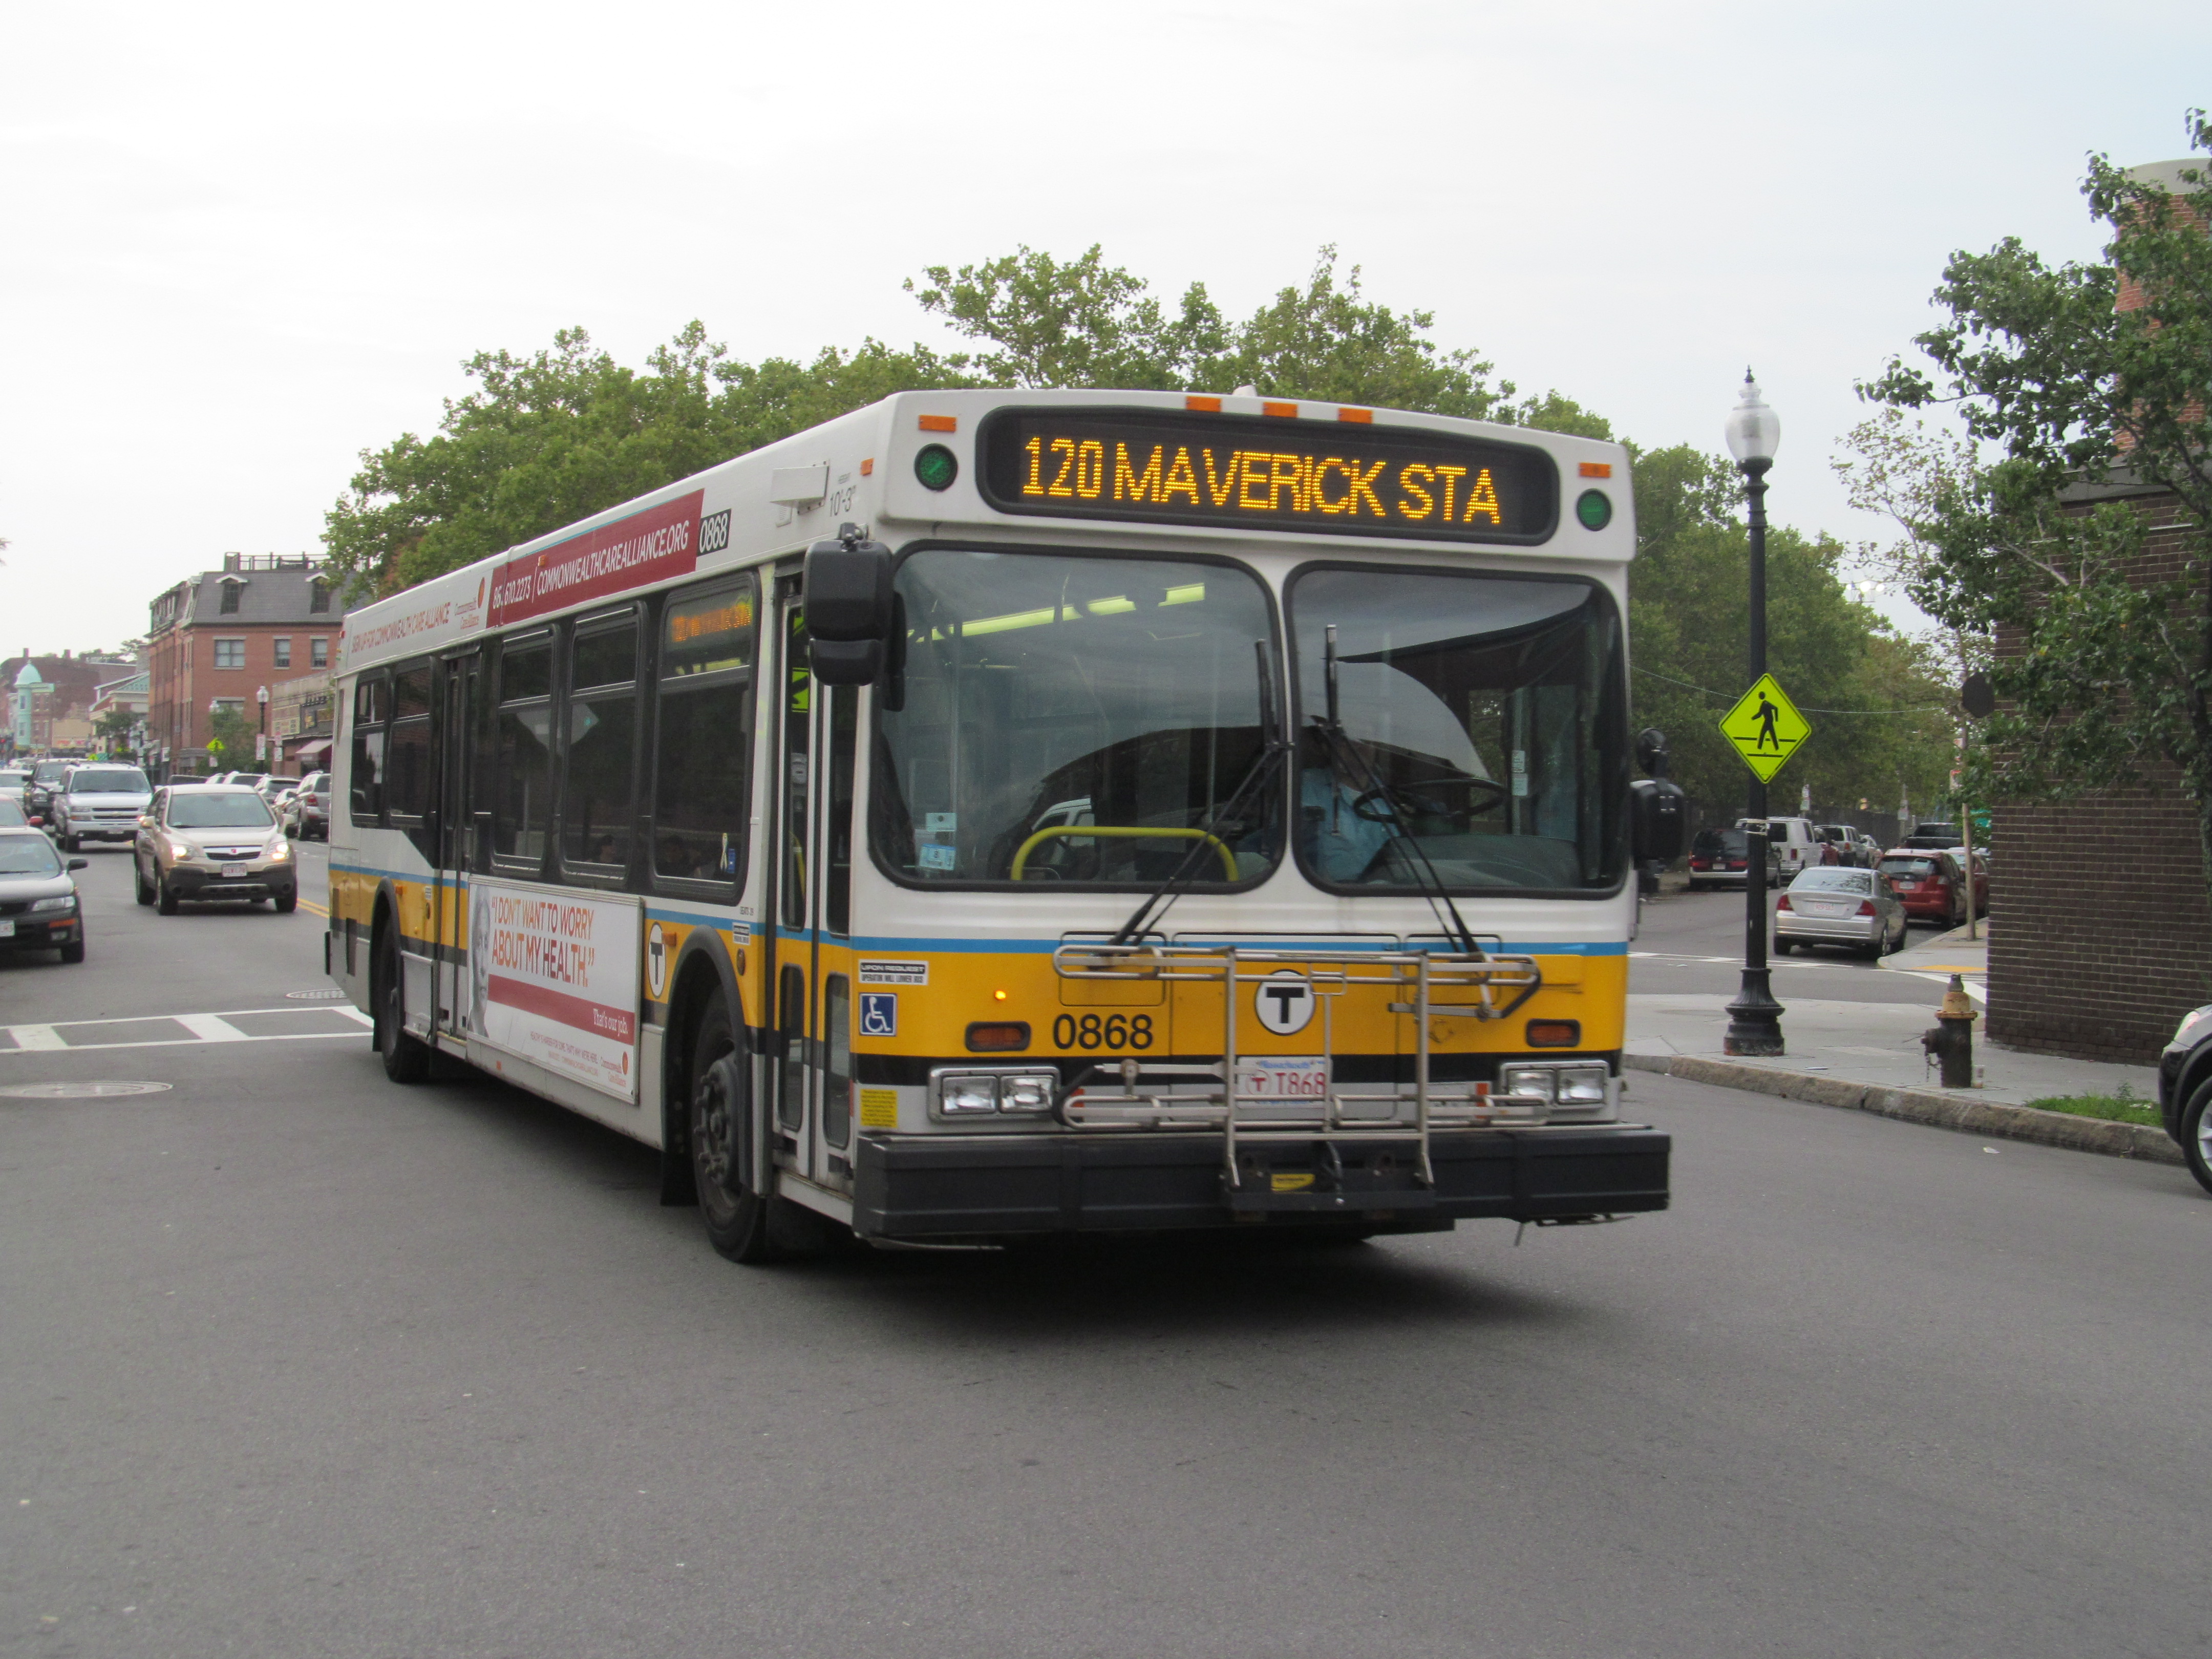 File:MBTA route 120 bus Meridian Street, August 2015.JPG - Wikimedia Commons